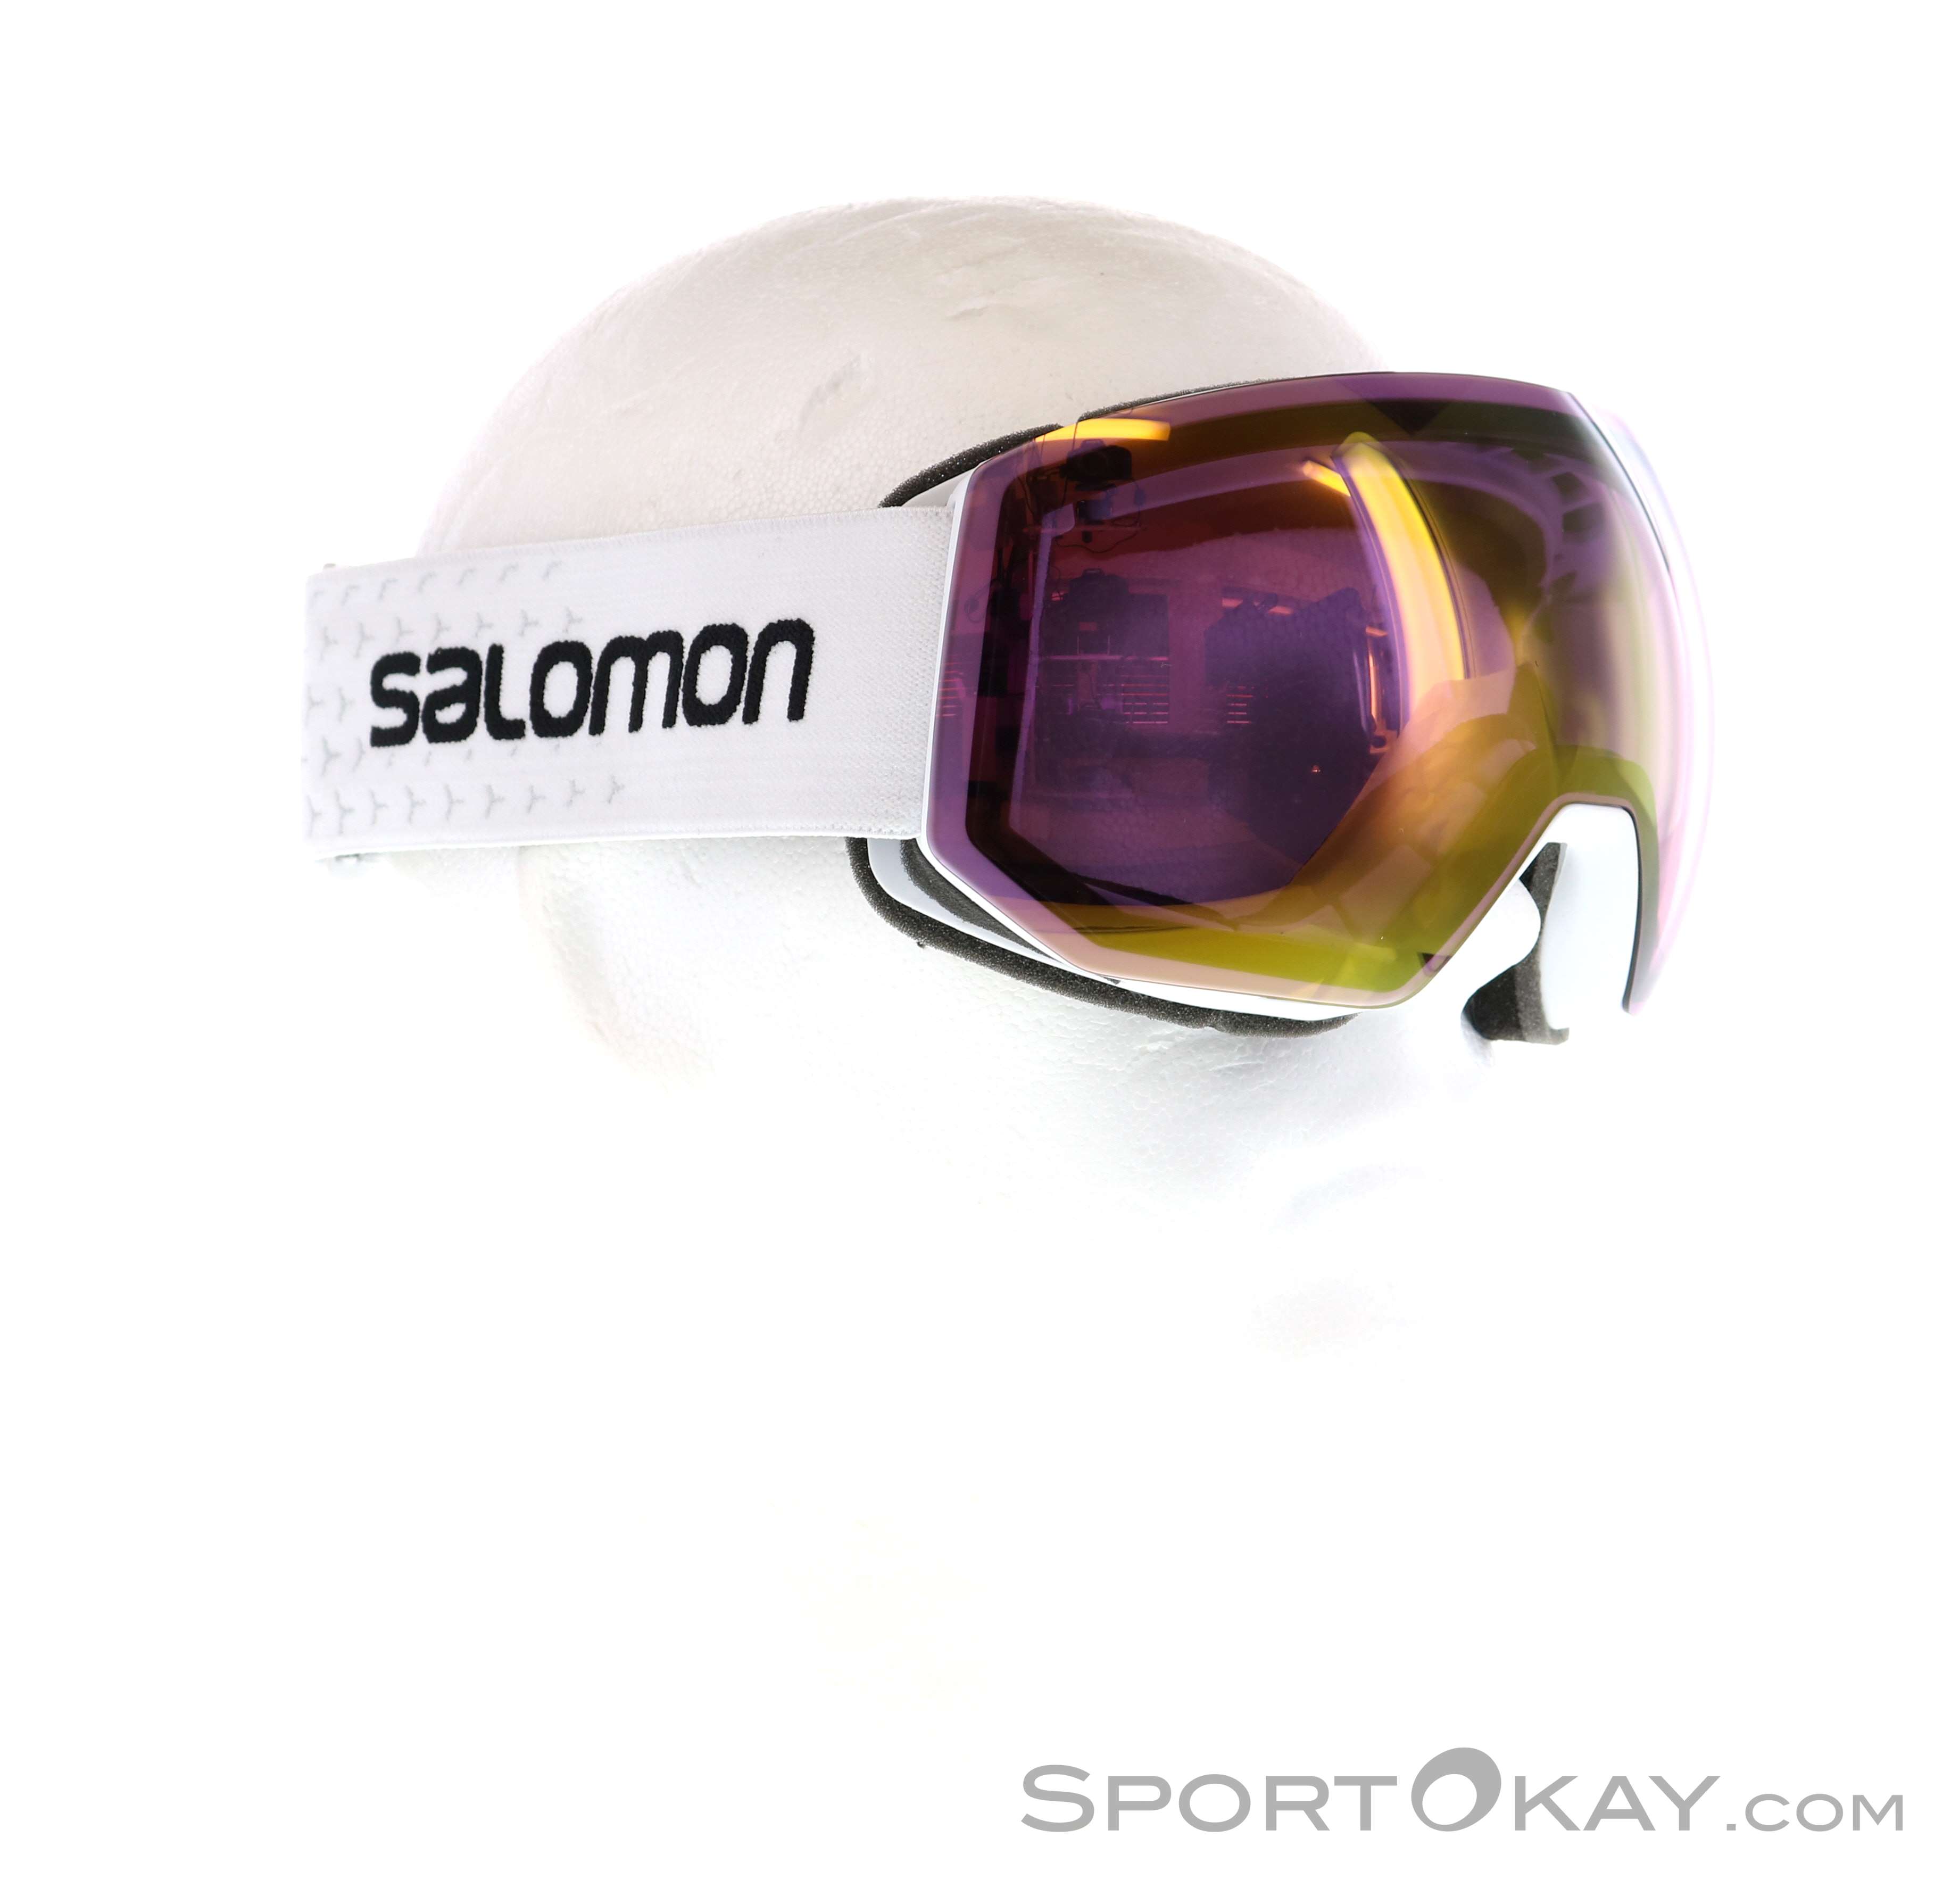 Salomon Radium Pro ML Ski Goggles - Ski Googles - Glasses Ski Touring - All